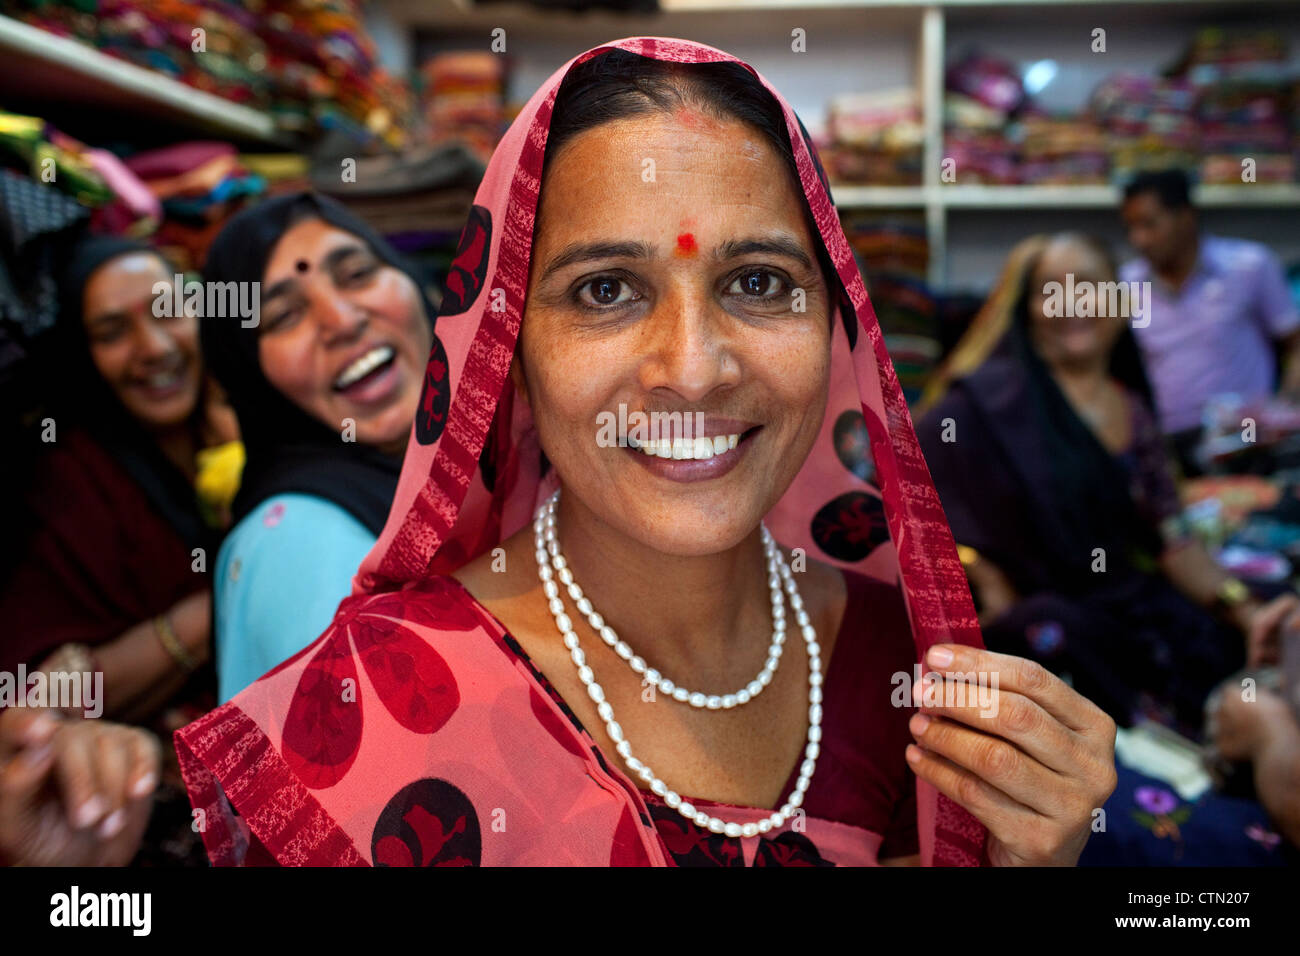 Ein Porträt des Lächelns hübsche Rabari Frauen tragen traditionelle Sari Kleider in ein Textilgeschäft in Ahmedabad, Bundesstaat Gujarat, Indien. Stockfoto